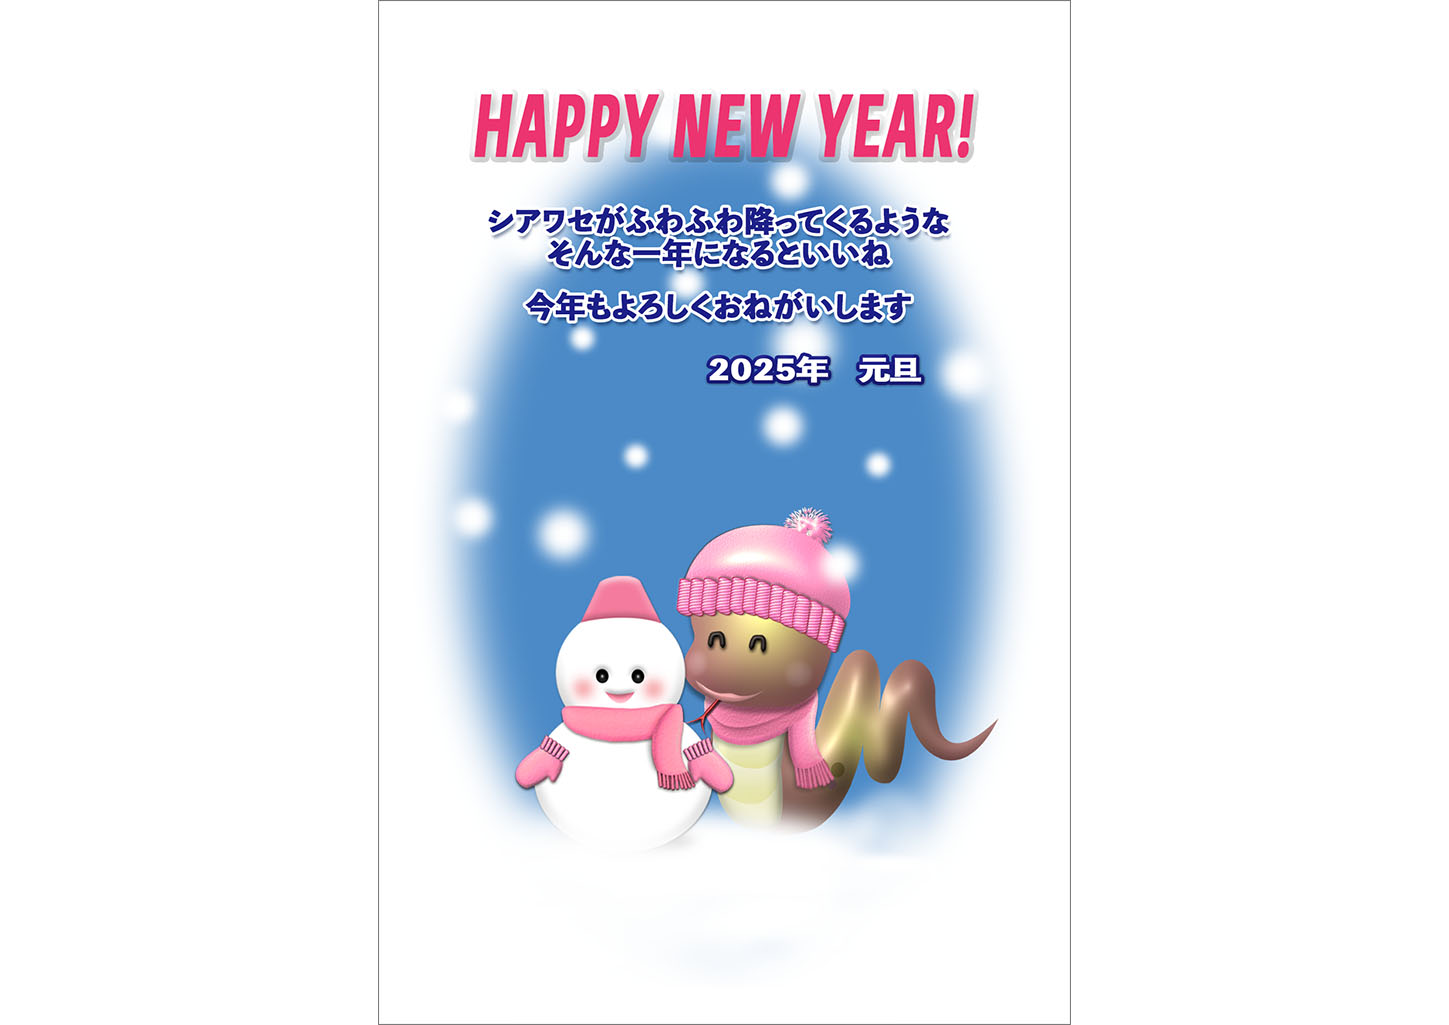 雪とピンク帽子の蛇の年賀状テンプレート無料デザイン素材